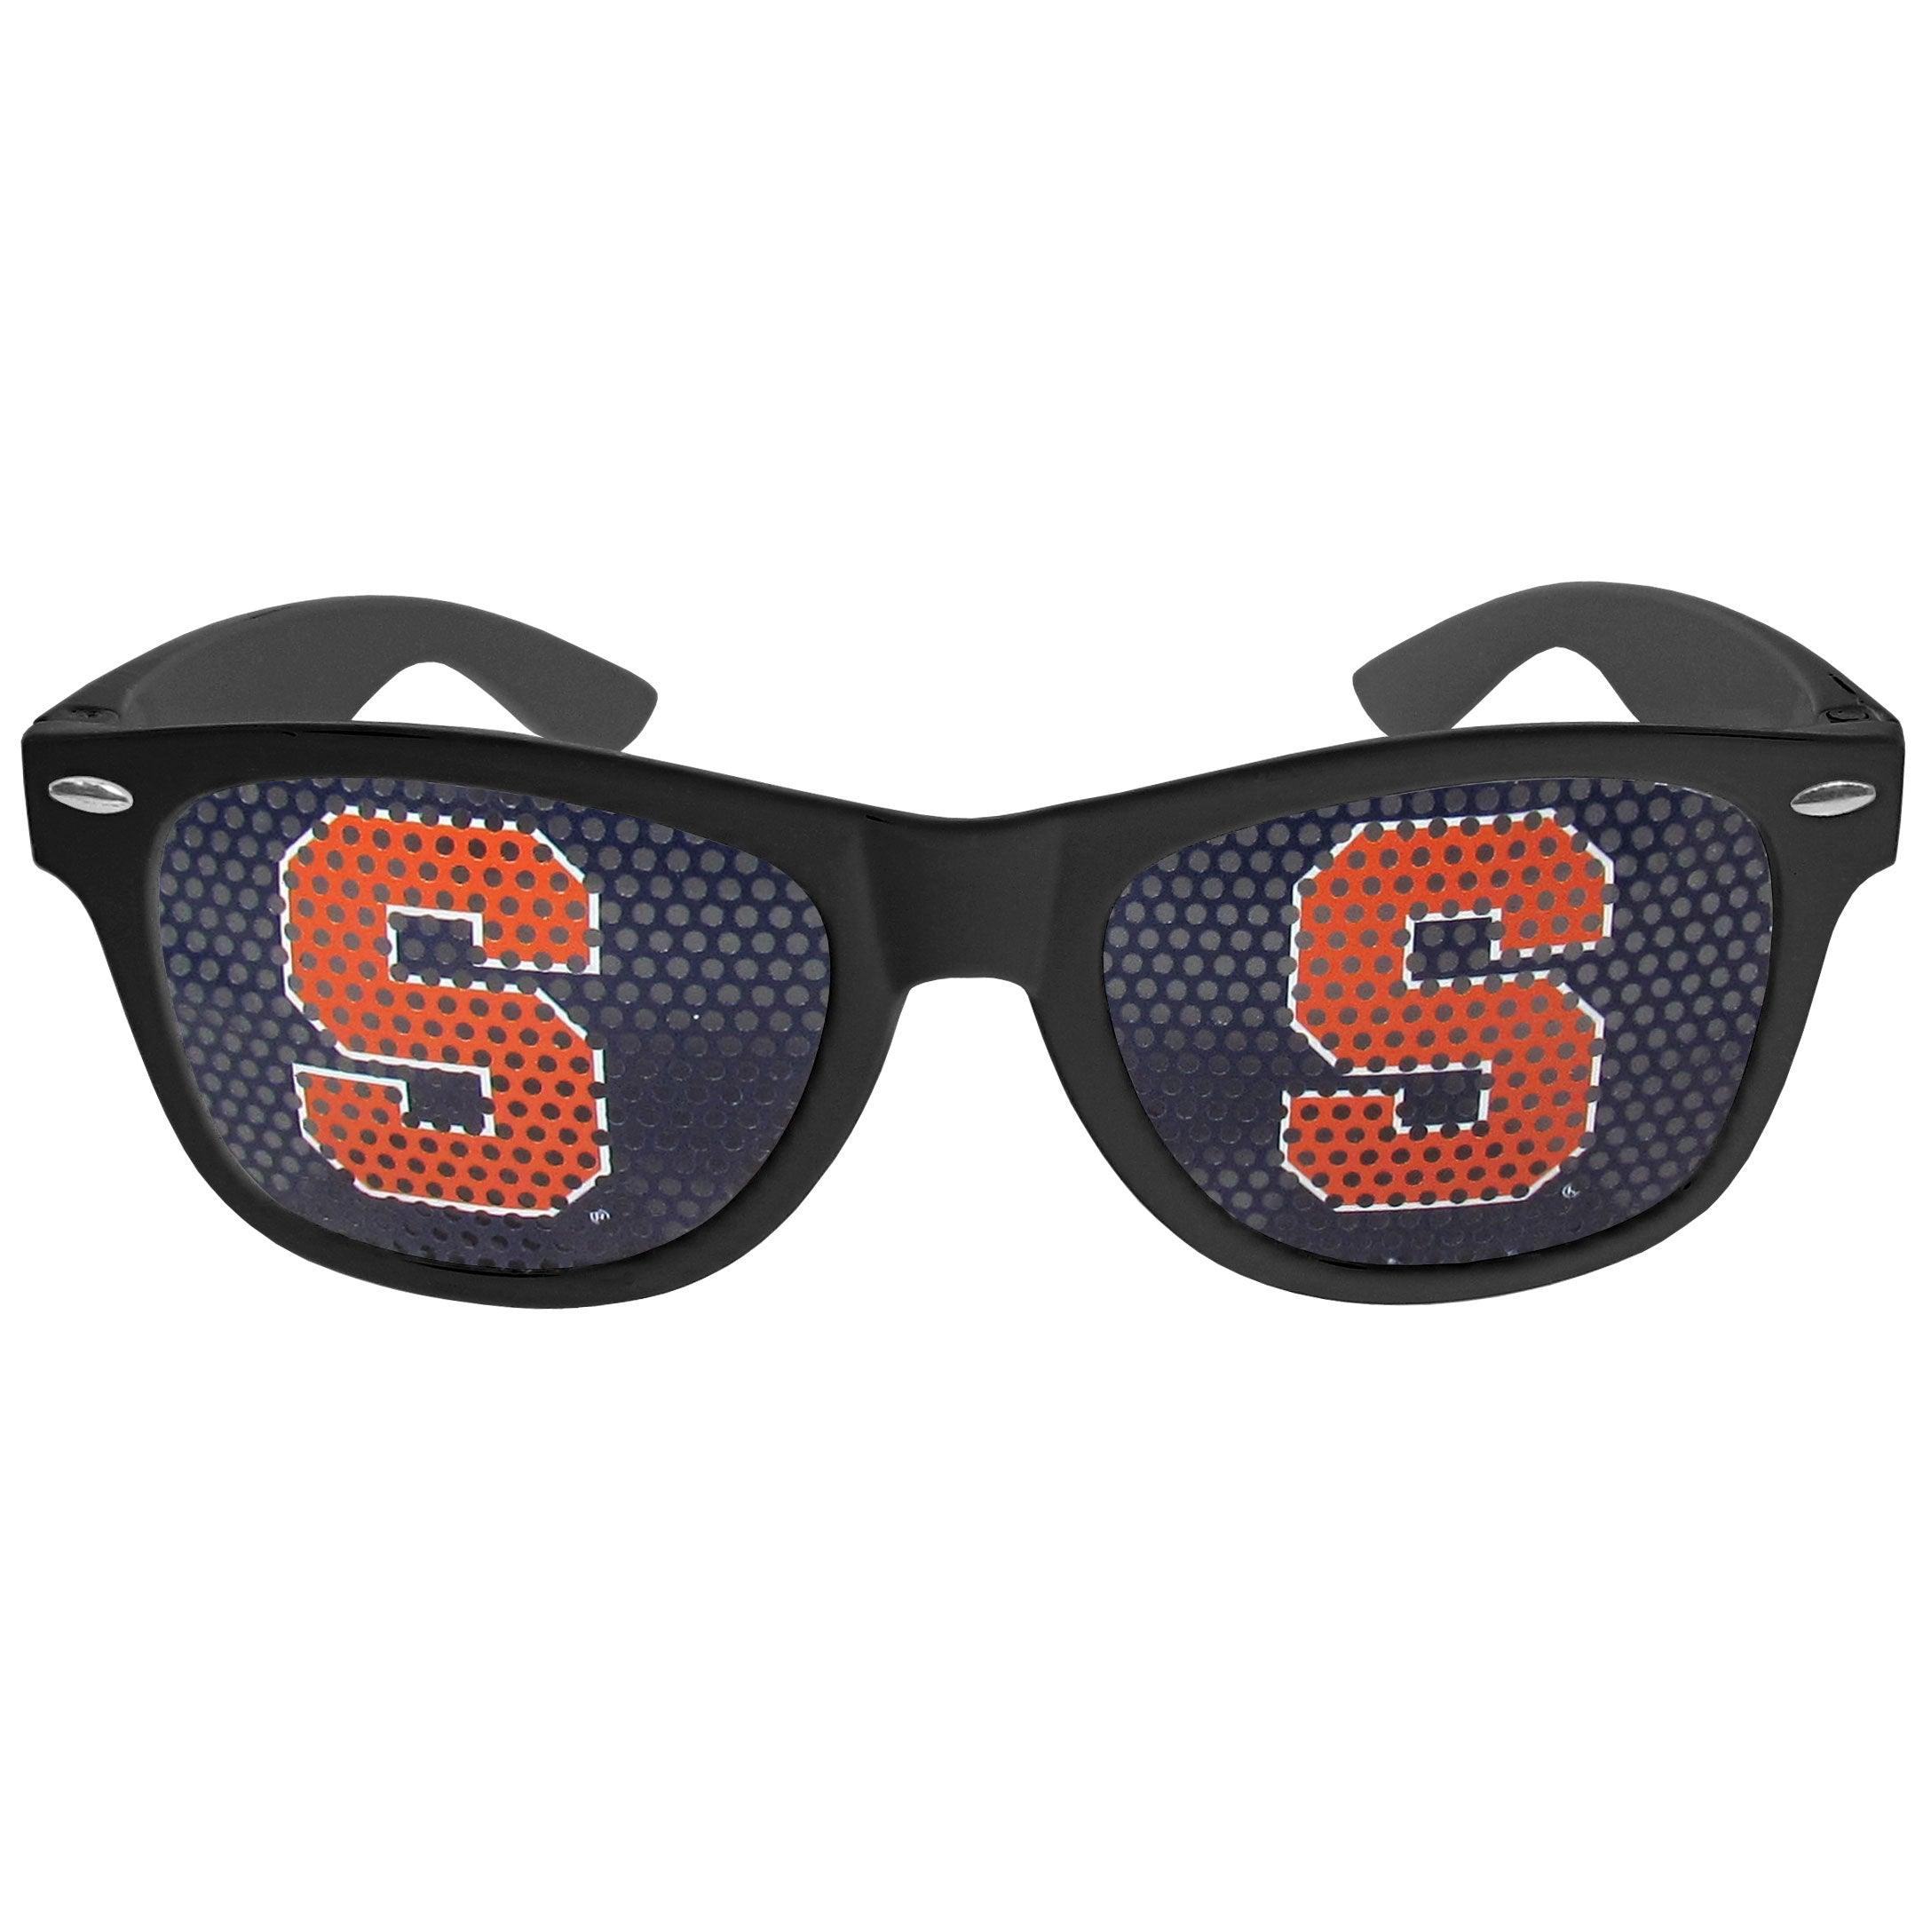 Syracuse Orange Game Day Shades - Flyclothing LLC